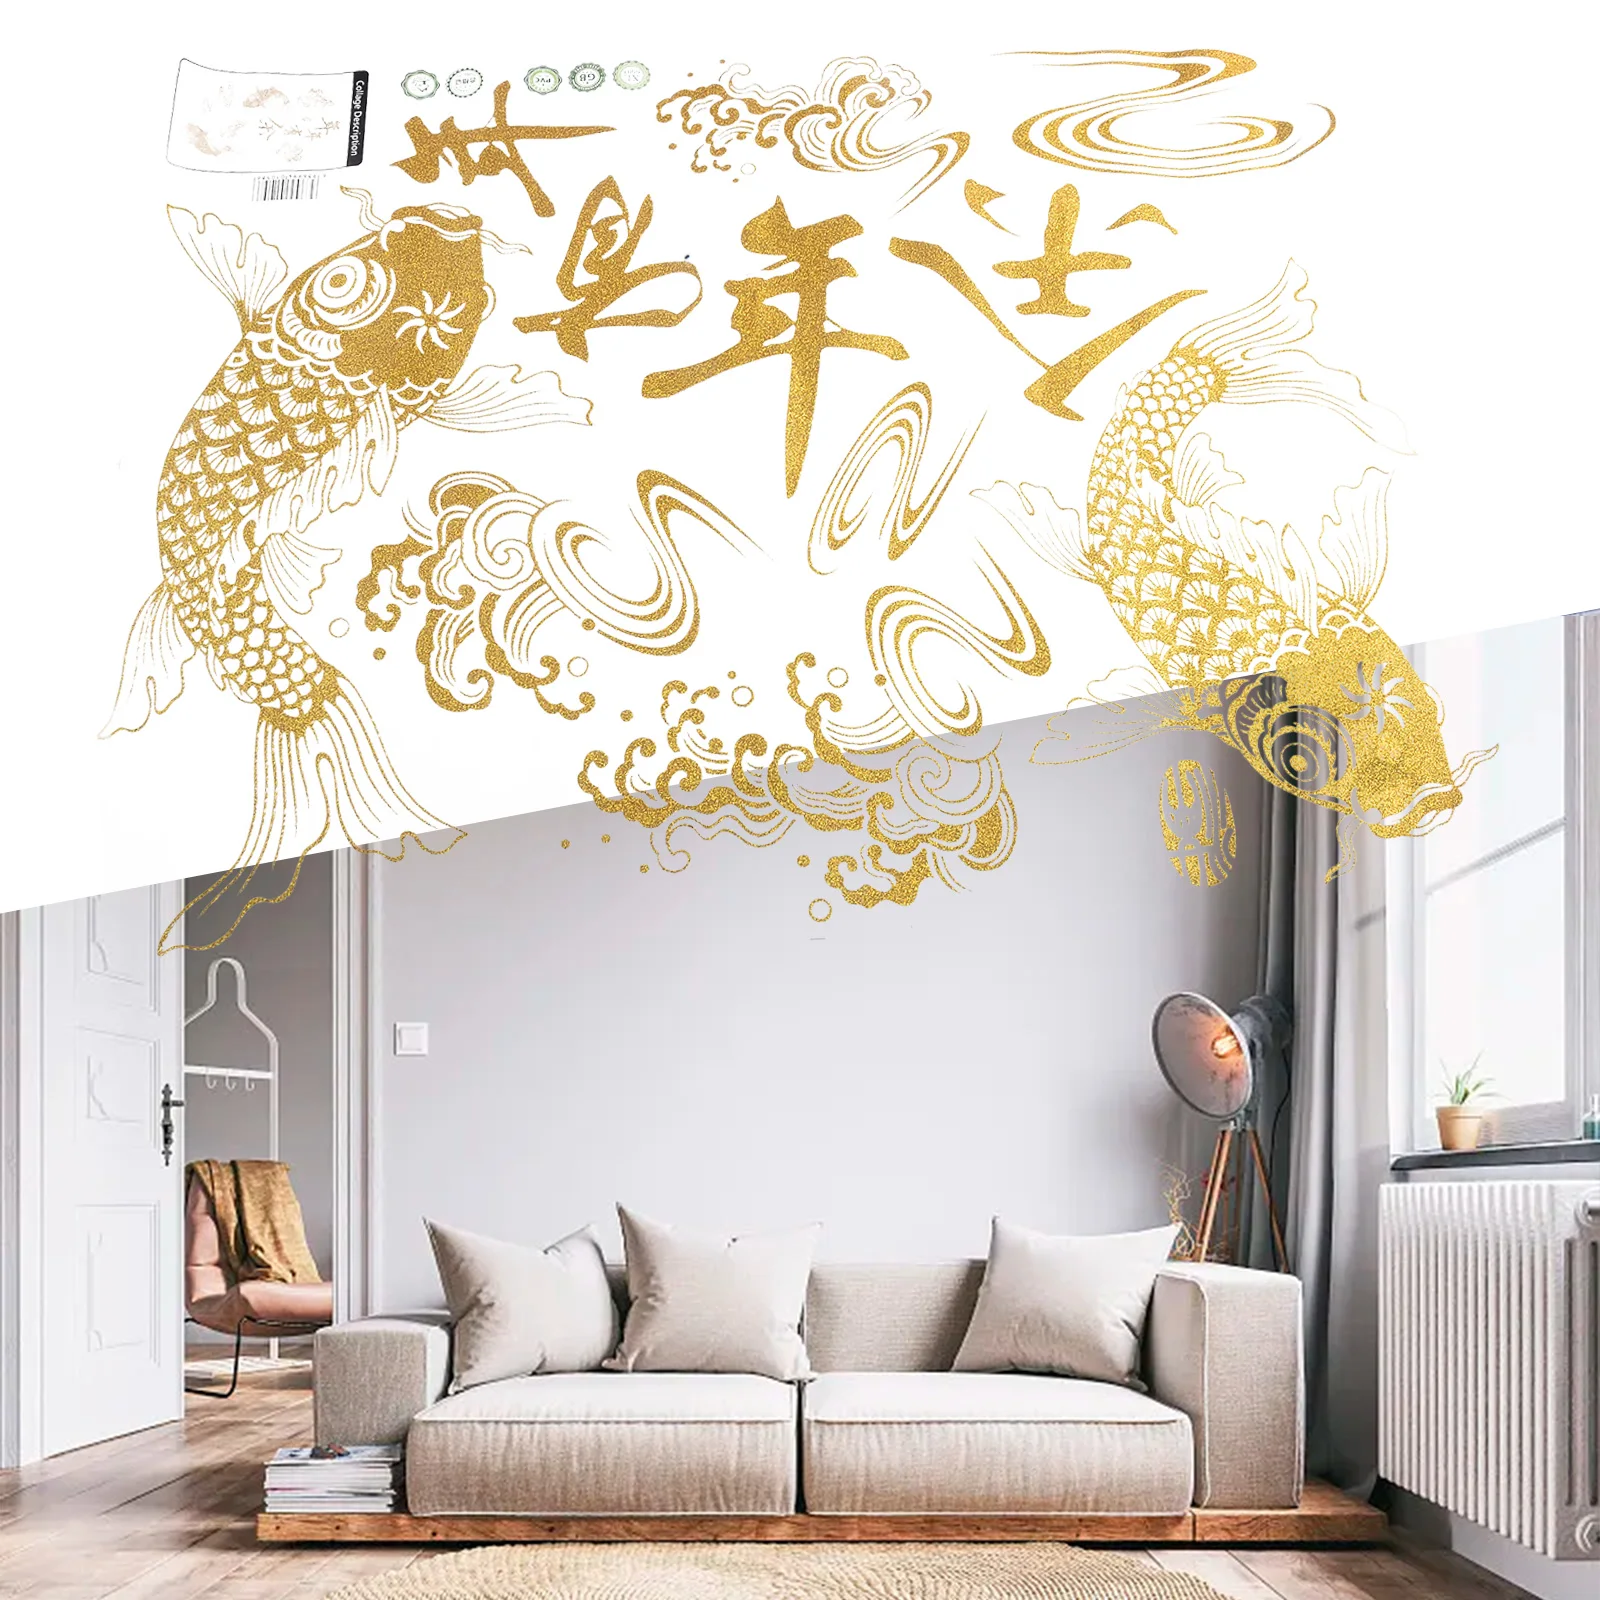 Добро пожаловать в китайский Новый год в стиле яркой наклейки CNY Decor, простой в использовании, размер 45 * 60 см, идеально подходит для празднования весеннего фестиваля